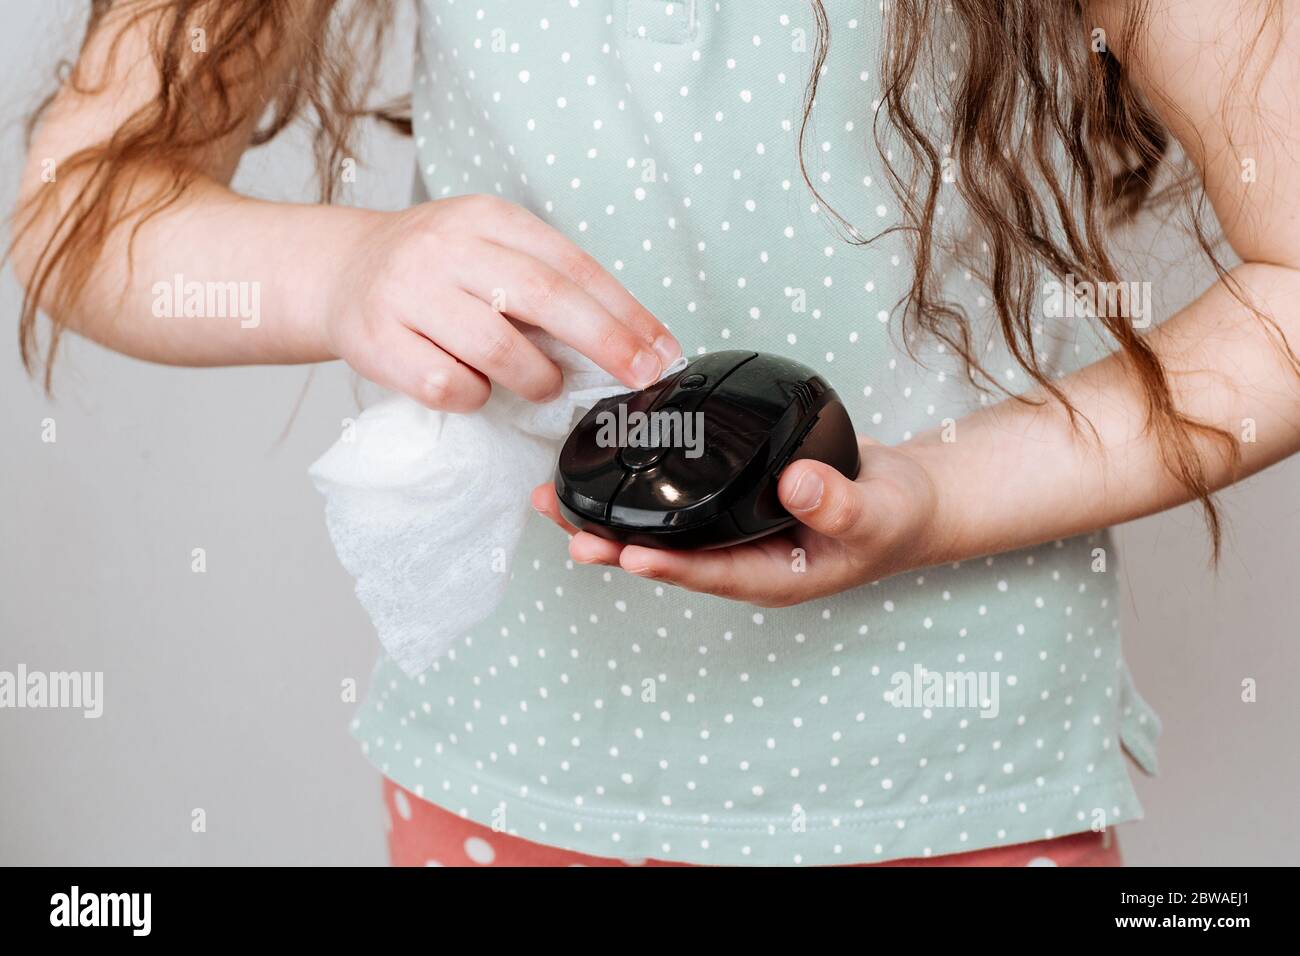 Une fille essuye une souris d'ordinateur avec un chiffon désinfectant. Concept de désinfection des surfaces à partir de bactéries ou de virus Banque D'Images